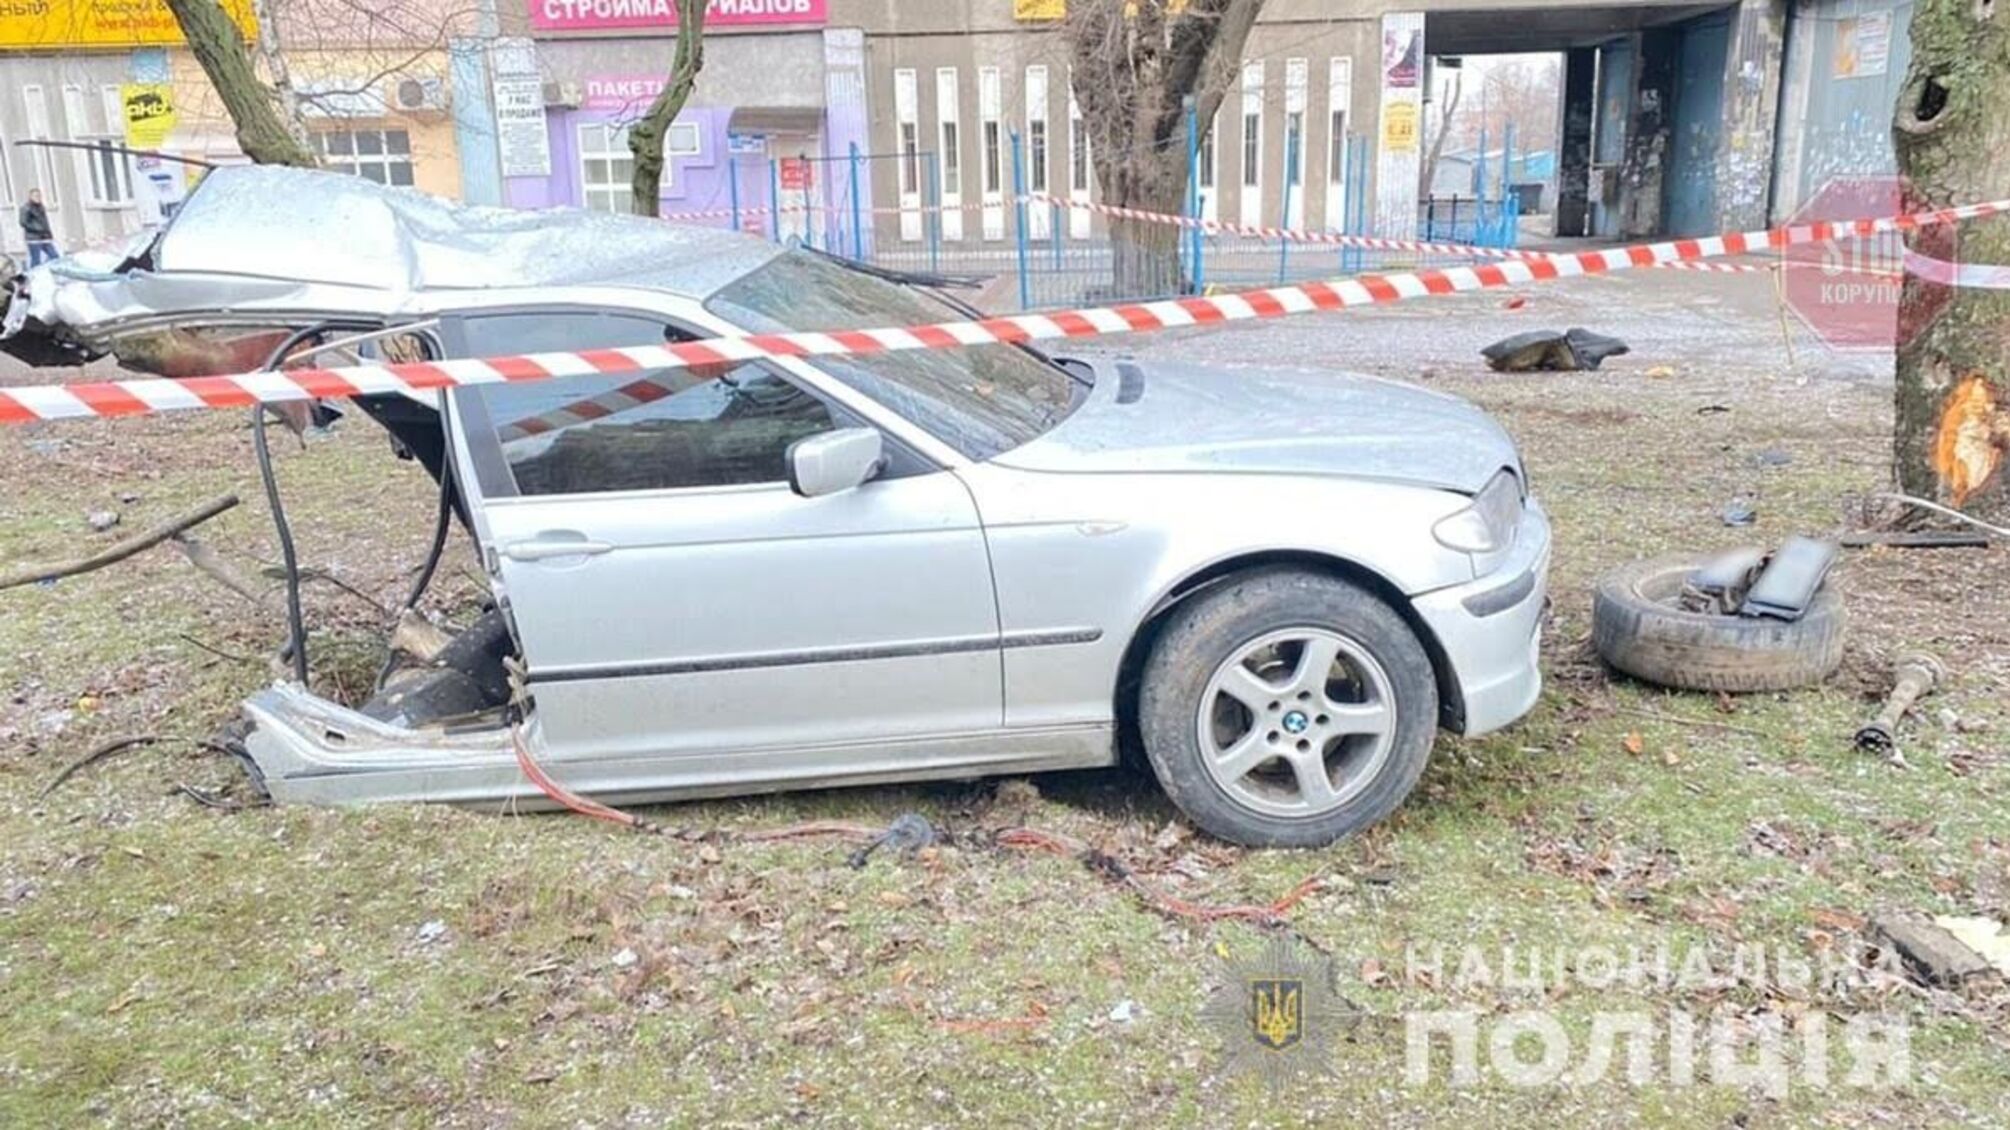 Новини Запоріжжя: внаслідок ДТП дерево розірвало автівку, є загиблий (фото)